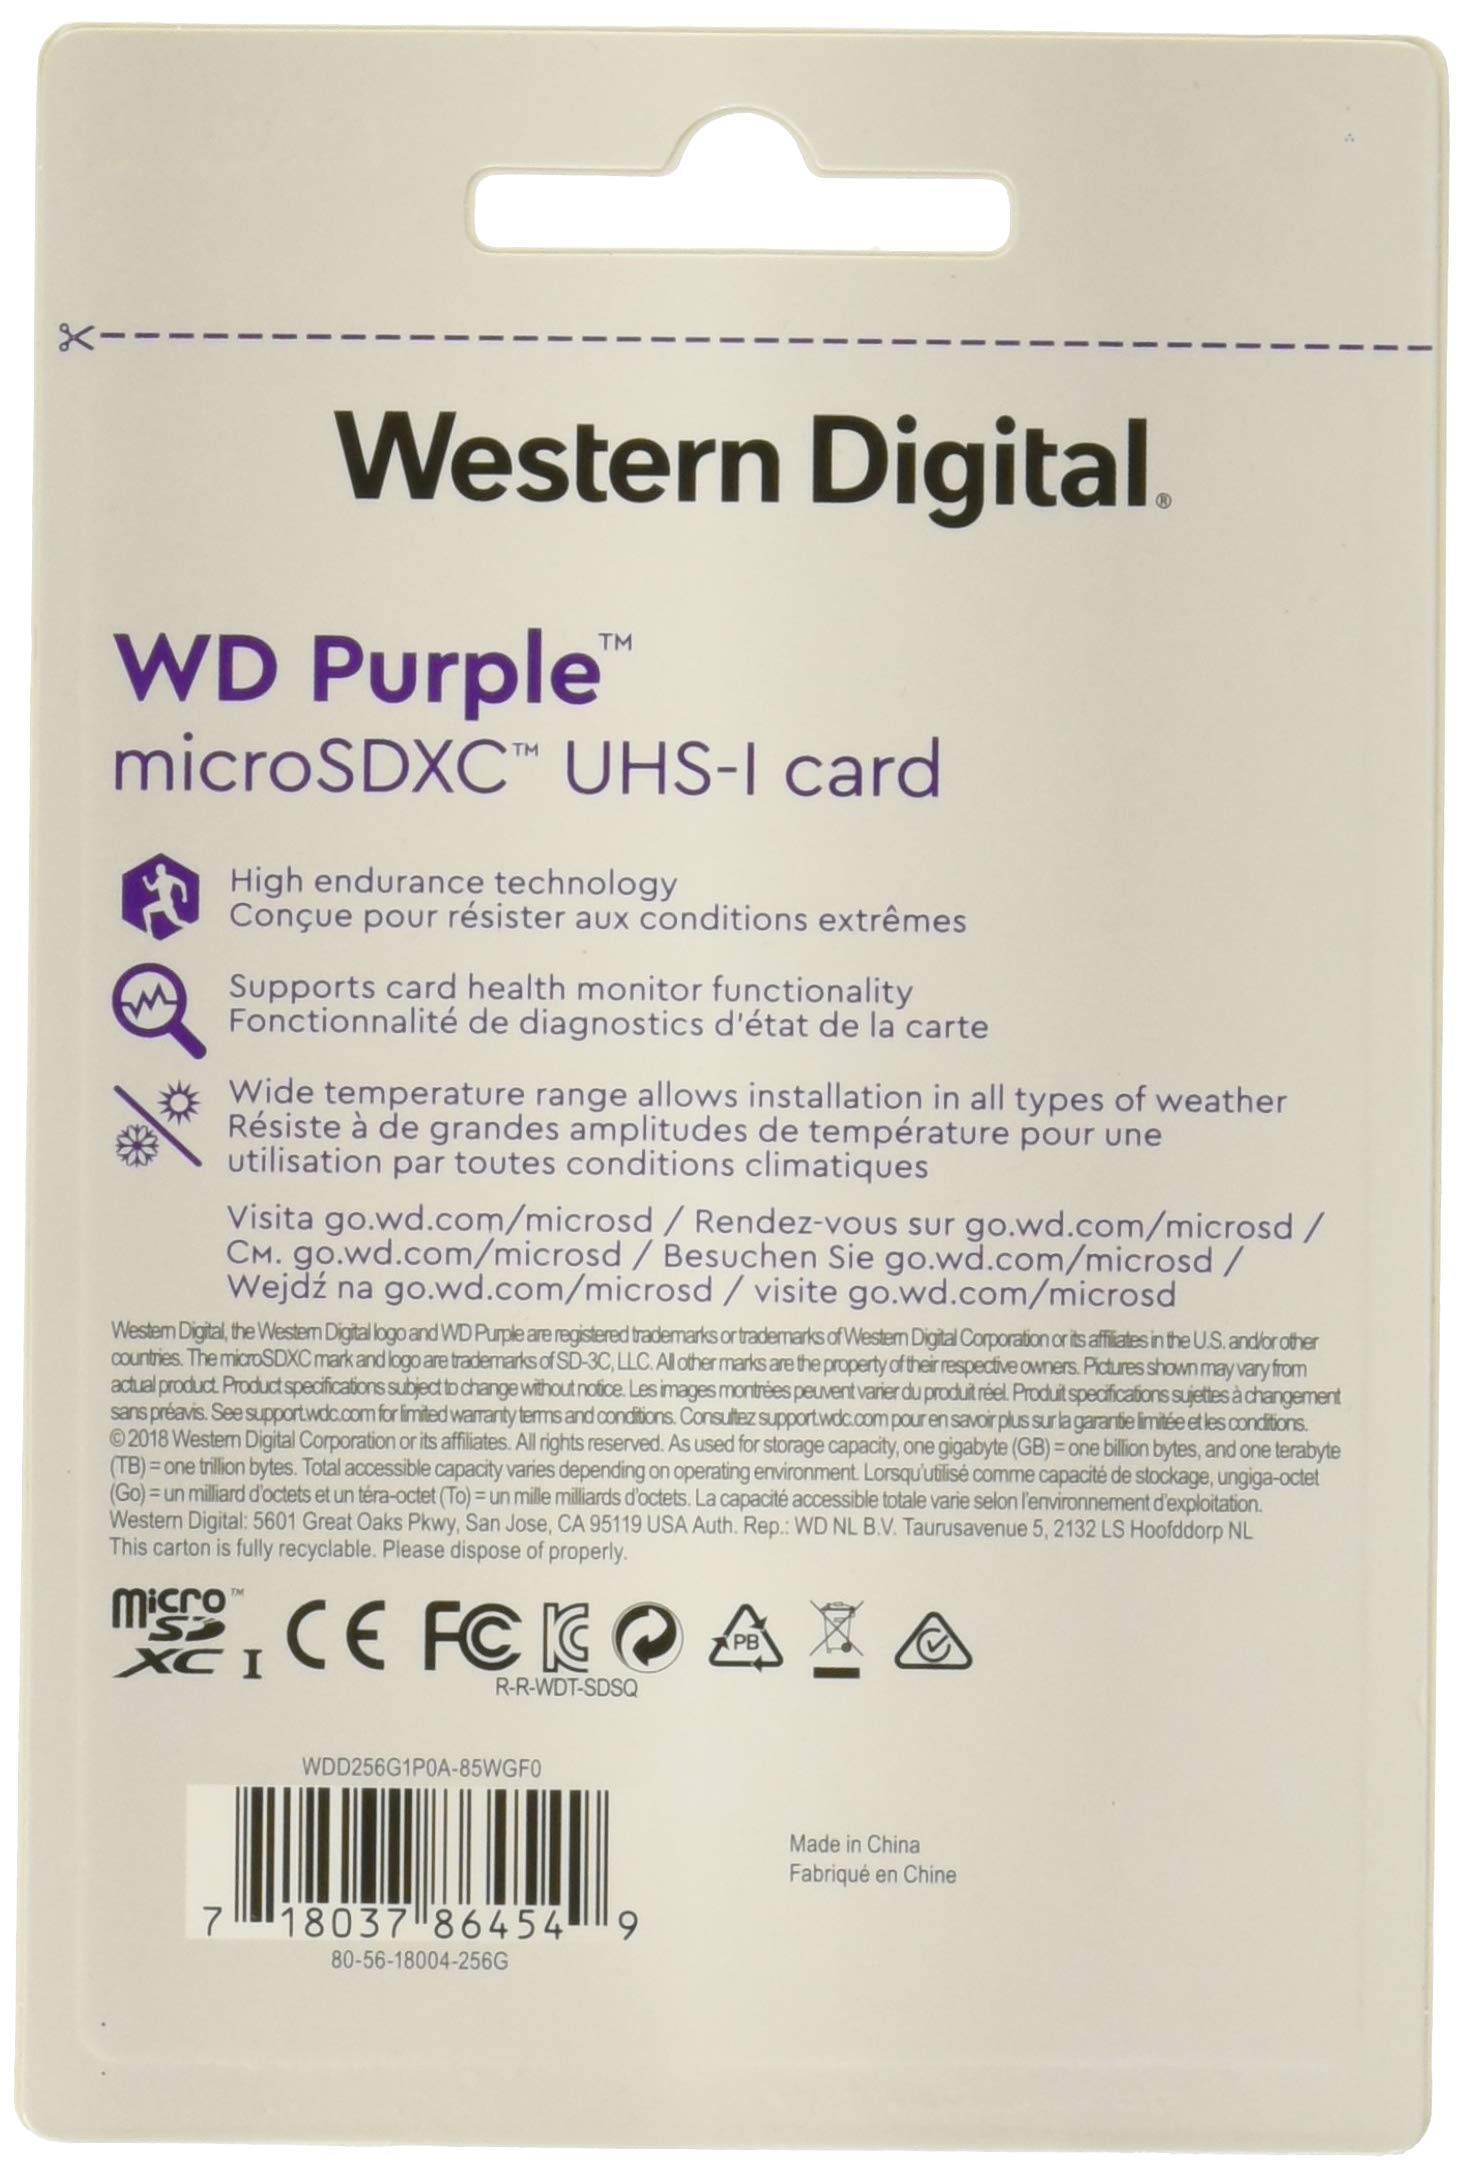 Western Digital WD Purple WDD256G1P0A 256 GB microSDXC